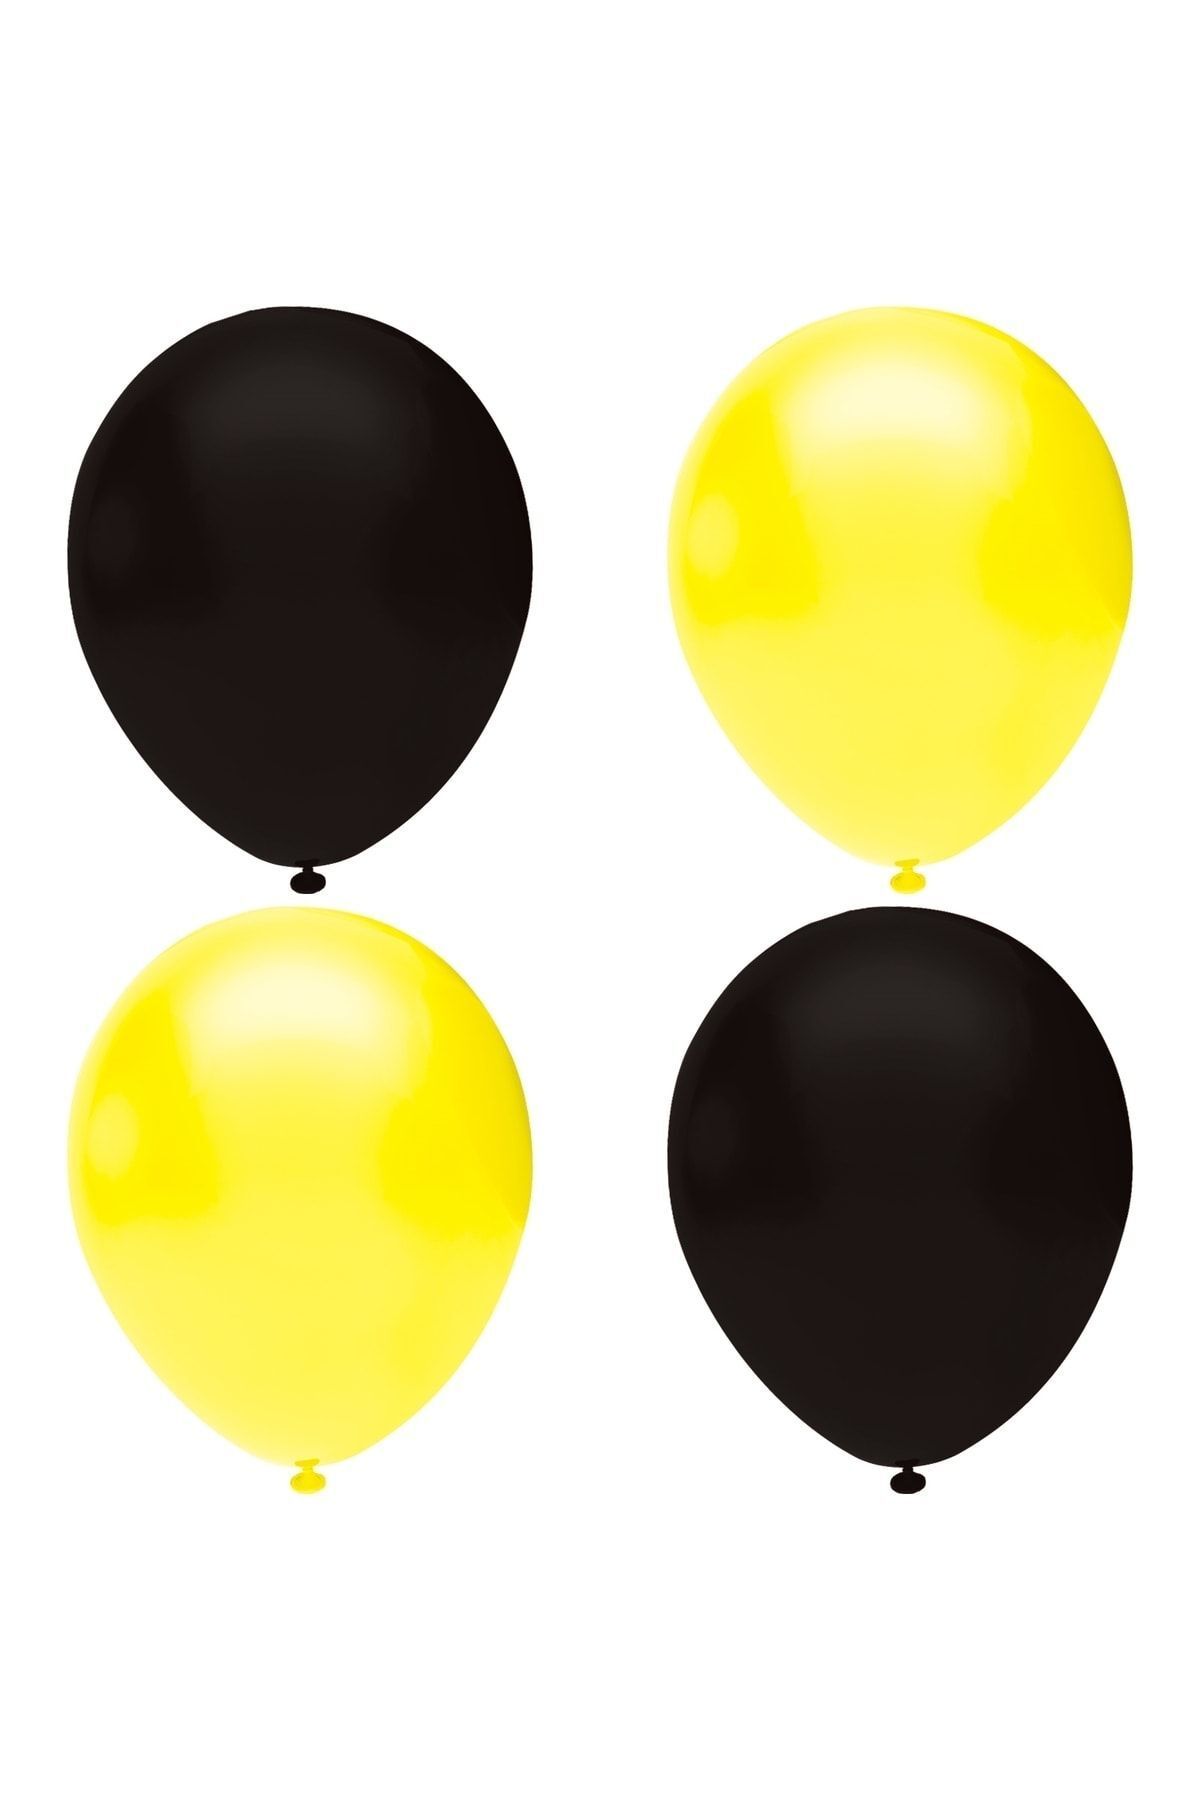 HKNYS Siyah -sarı Pastel Lateks Balon -50 Adet Balon Zinciri Ve Pompası Hediye